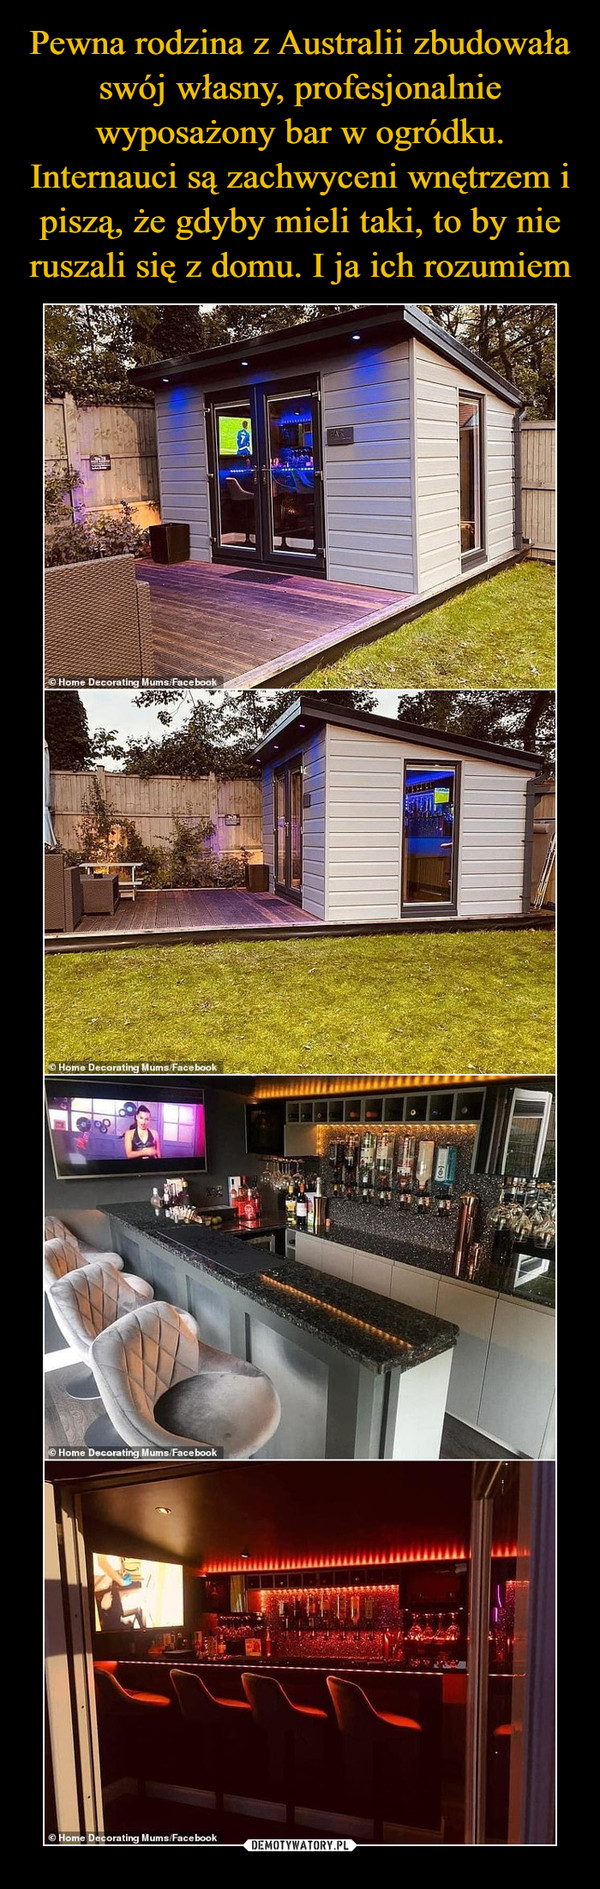 Pewna rodzina z Australii zbudowała swój własny, profesjonalnie wyposażony bar w ogródku. Internauci są zachwyceni wnętrzem i piszą, że gdyby mieli taki, to by nie ruszali się z domu. I ja ich rozumiem